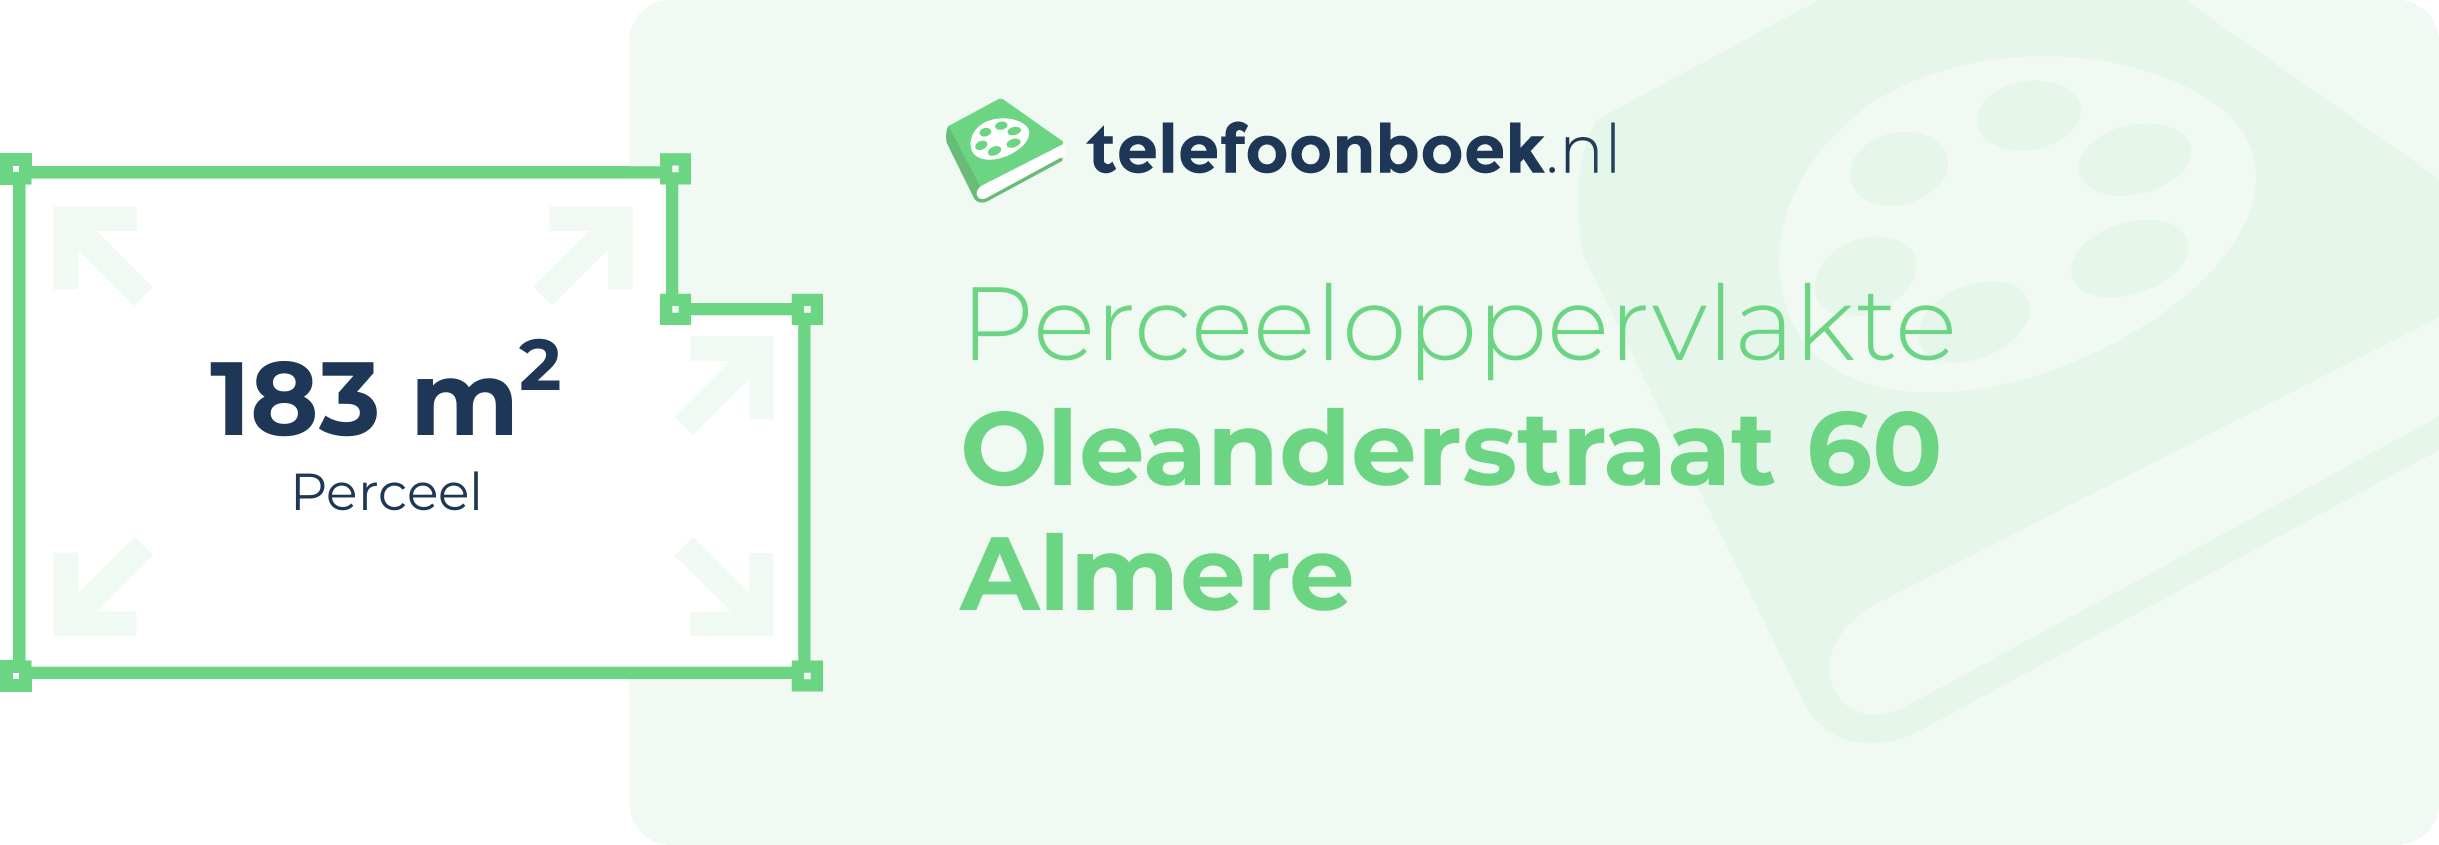 Perceeloppervlakte Oleanderstraat 60 Almere